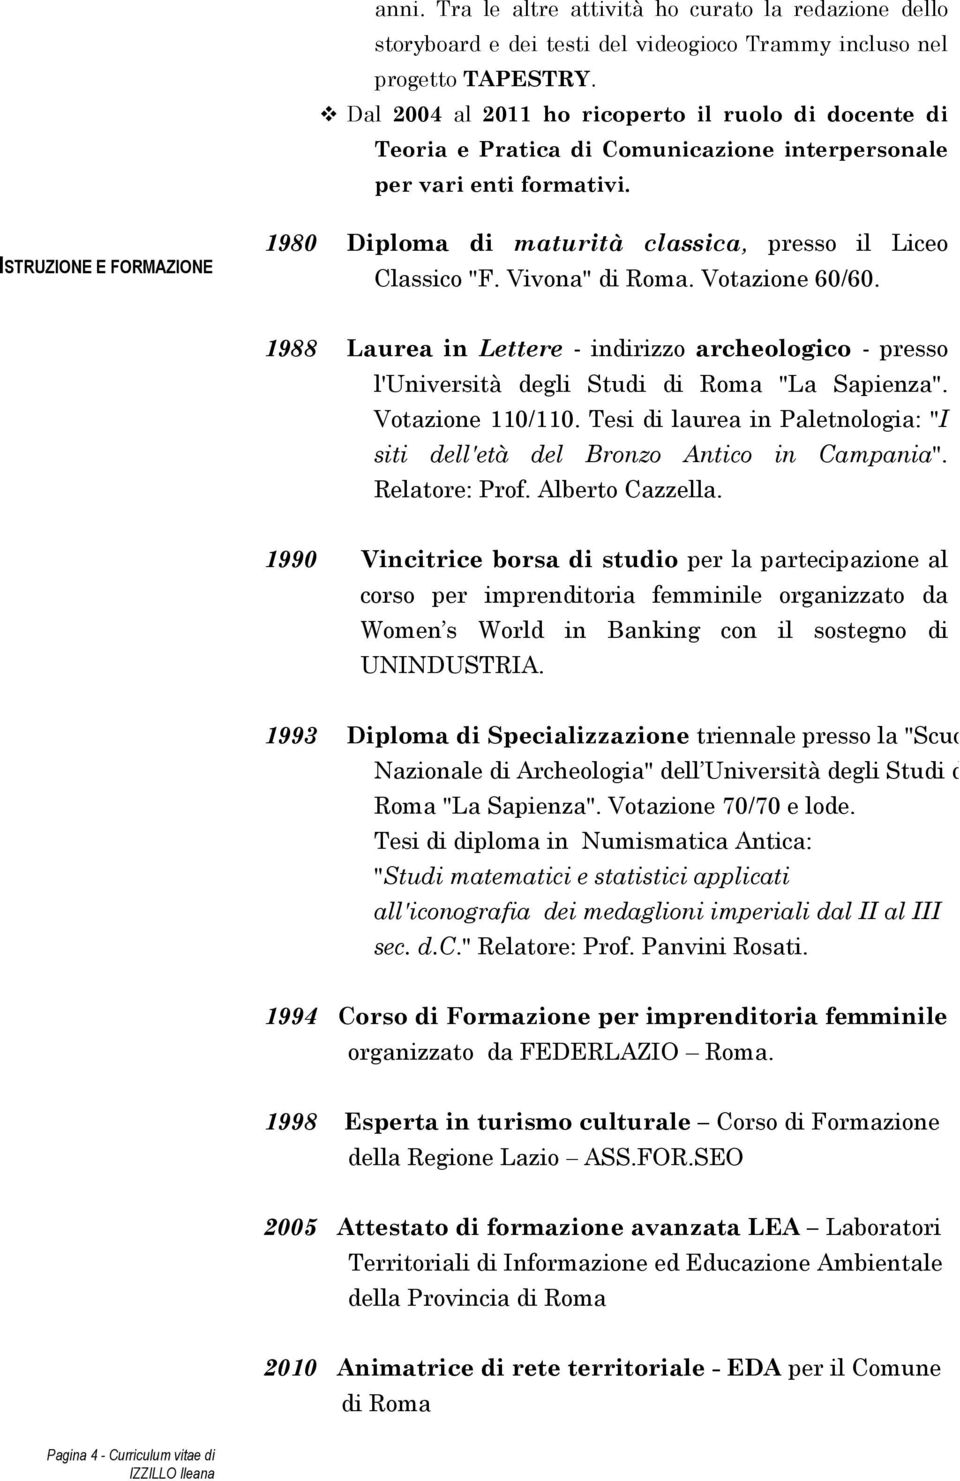 ISTRUZIONE E FORMAZIONE 1980 Diploma di maturità classica, presso il Liceo Classico "F. Vivona" di Roma. Votazione 60/60.